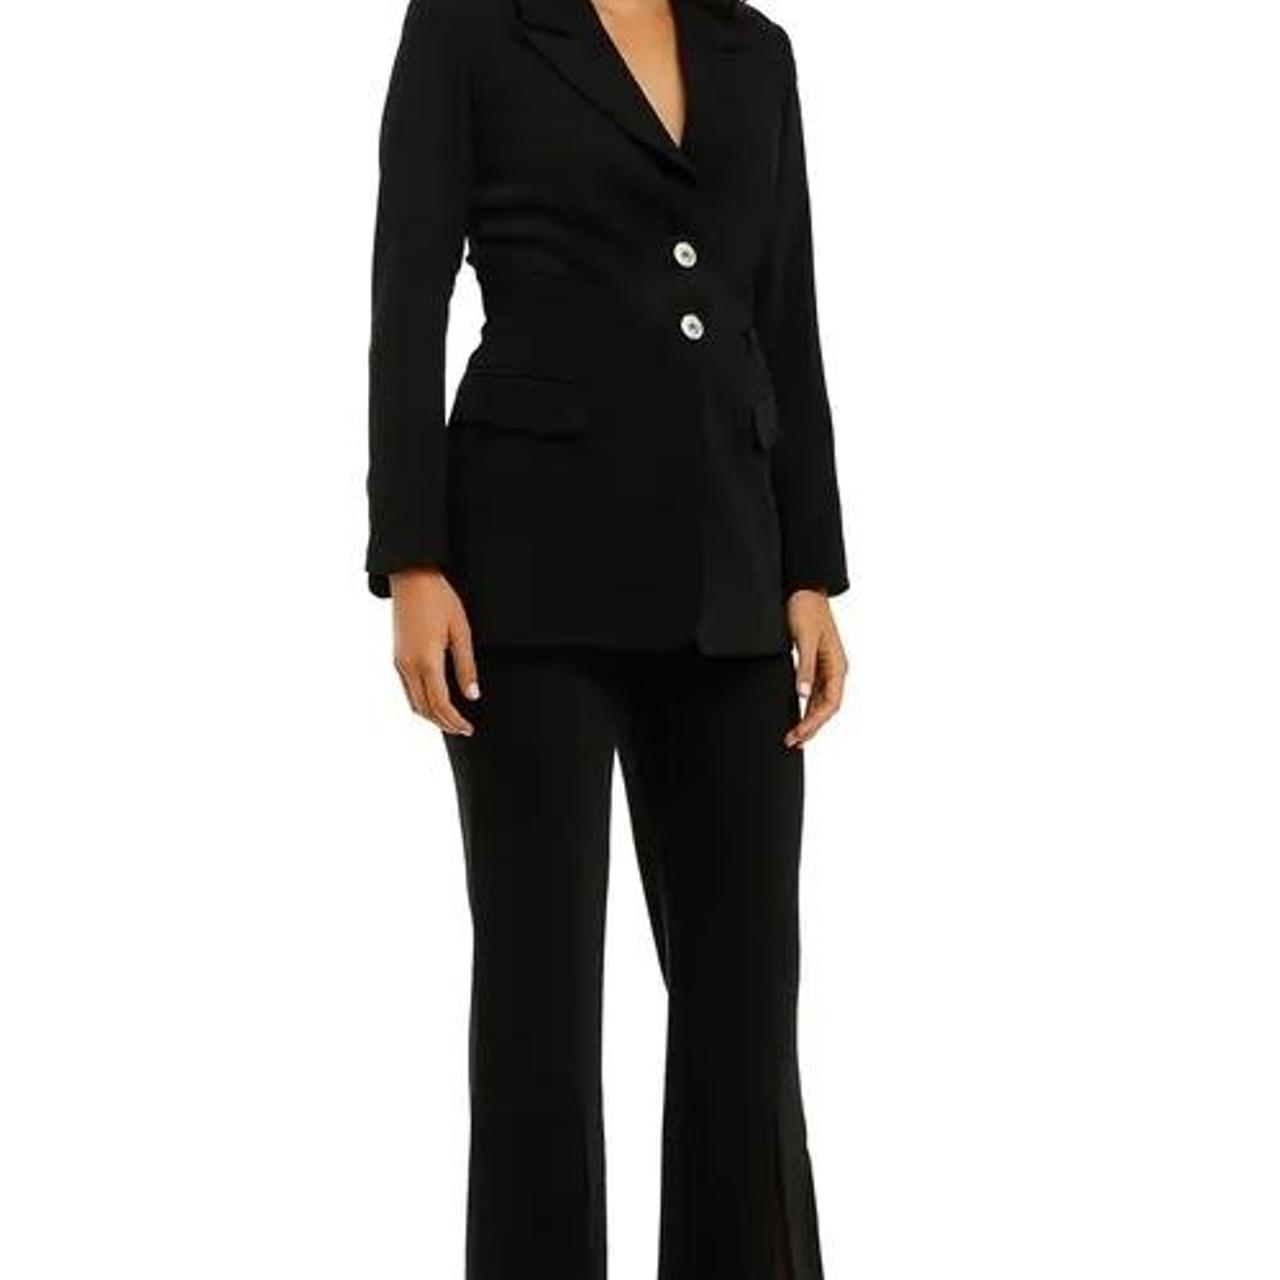 Elliatt Black Blazer and Pant Suit Set - Size 14... - Depop